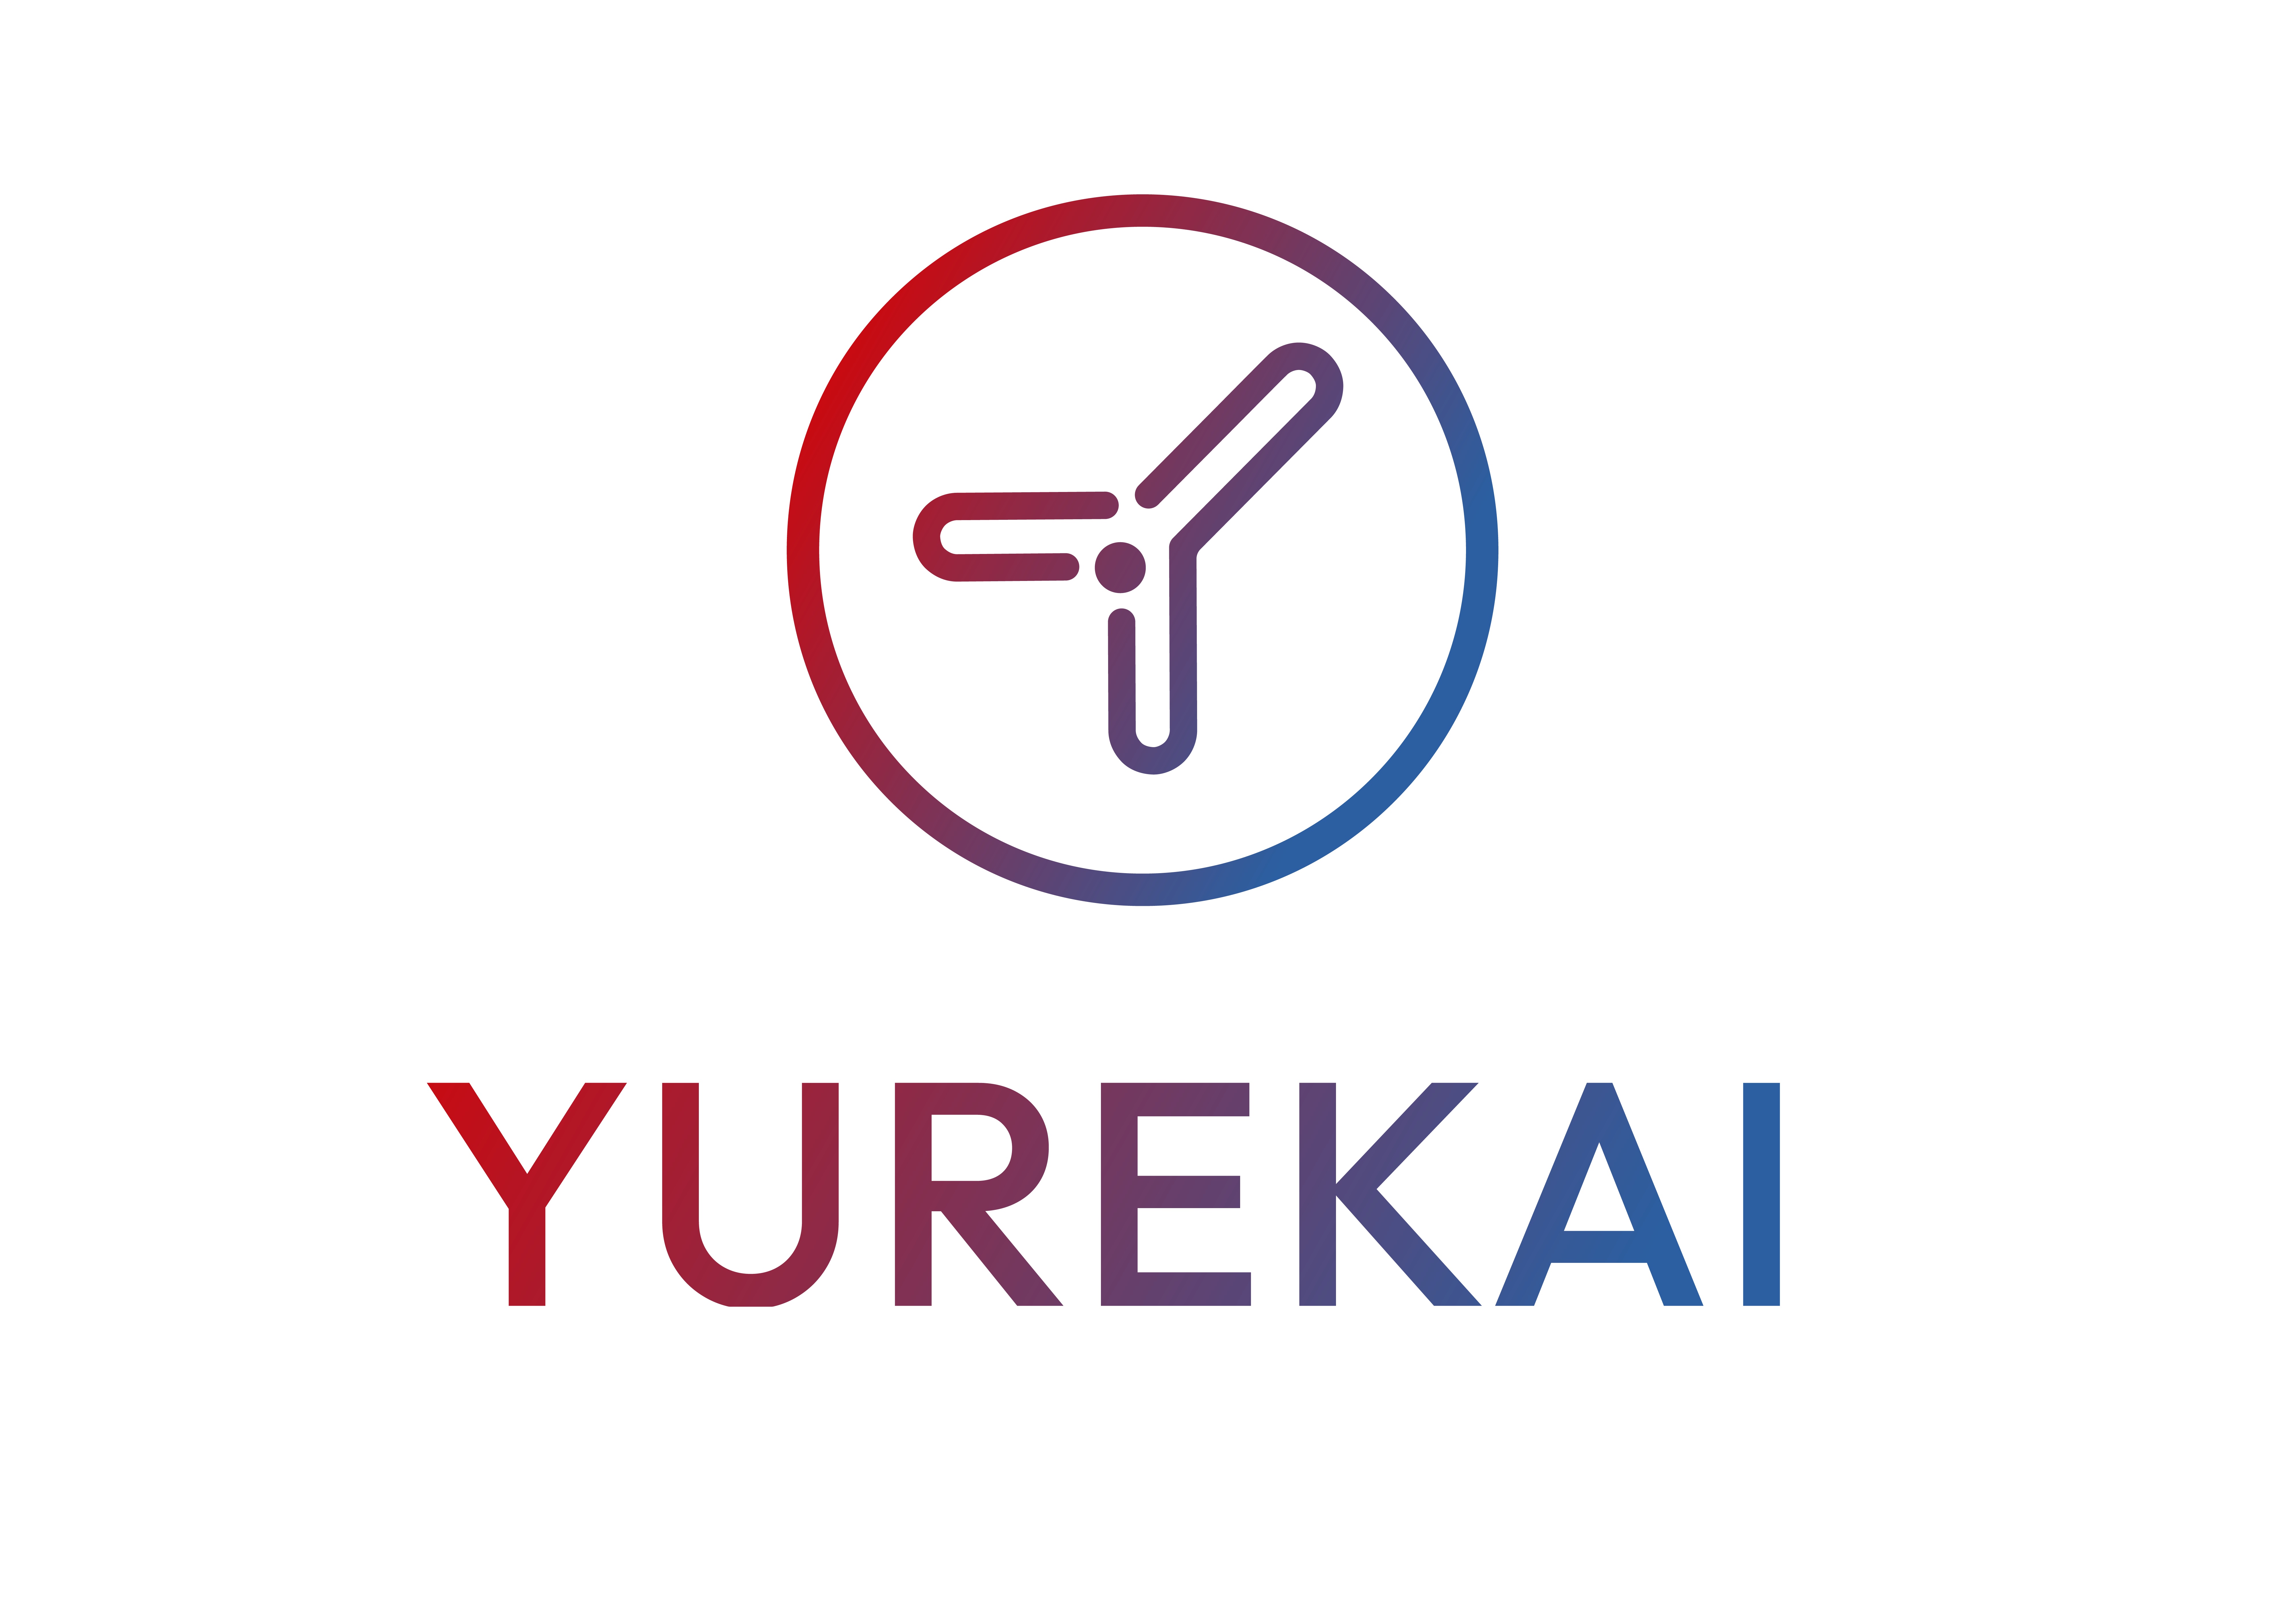 Yurekai logo